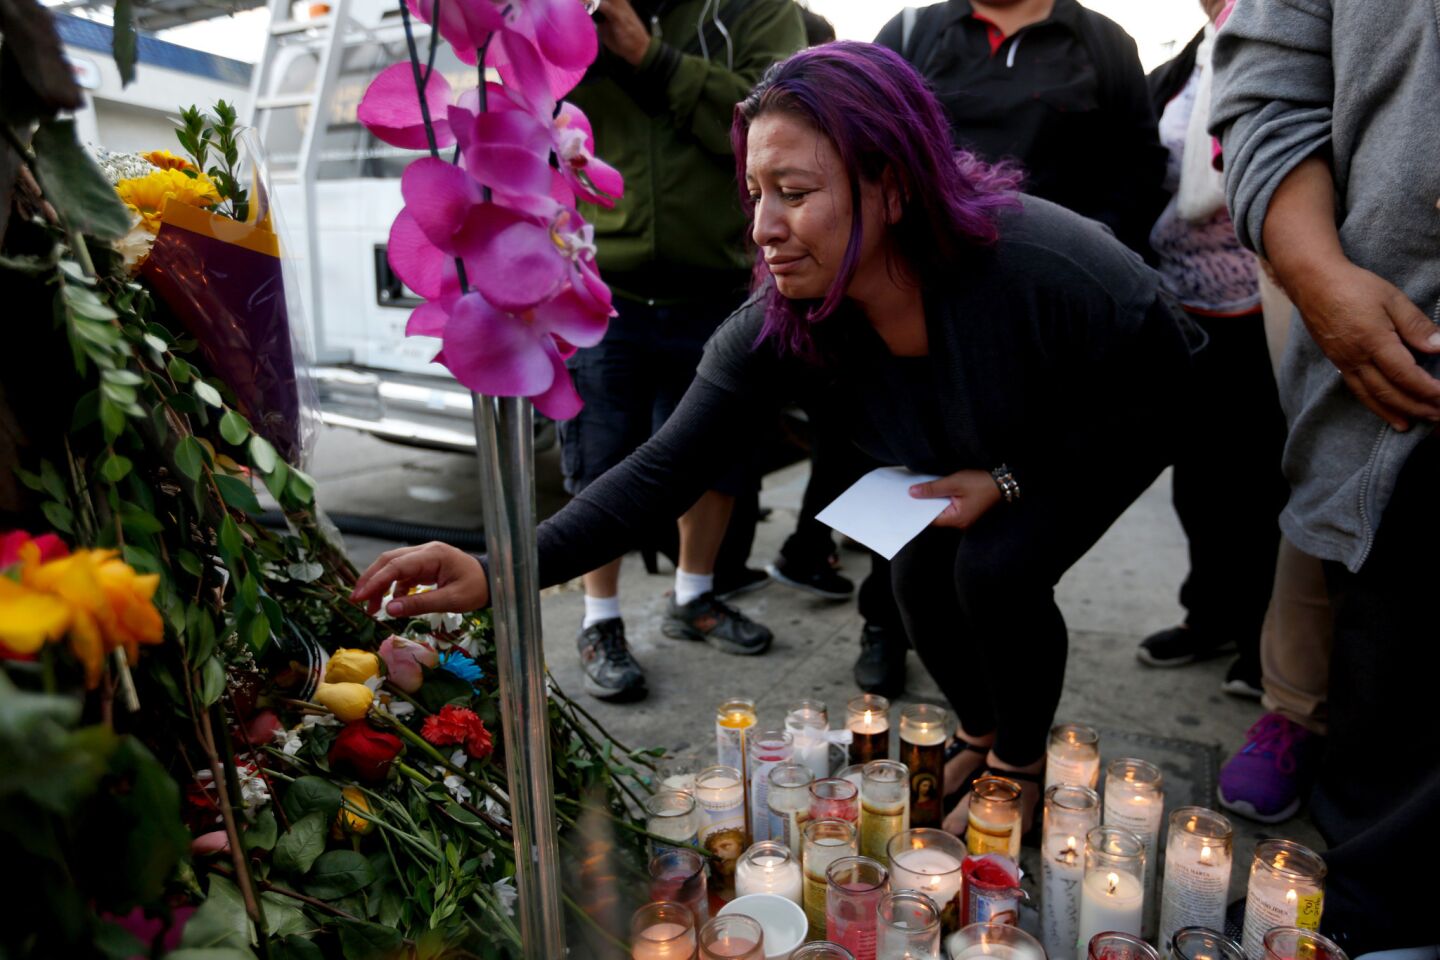 Jennifer Ruiz, 26, attends a vigil for her mother, Rosa "Rosalba" Ruiz, a victim of the crash.